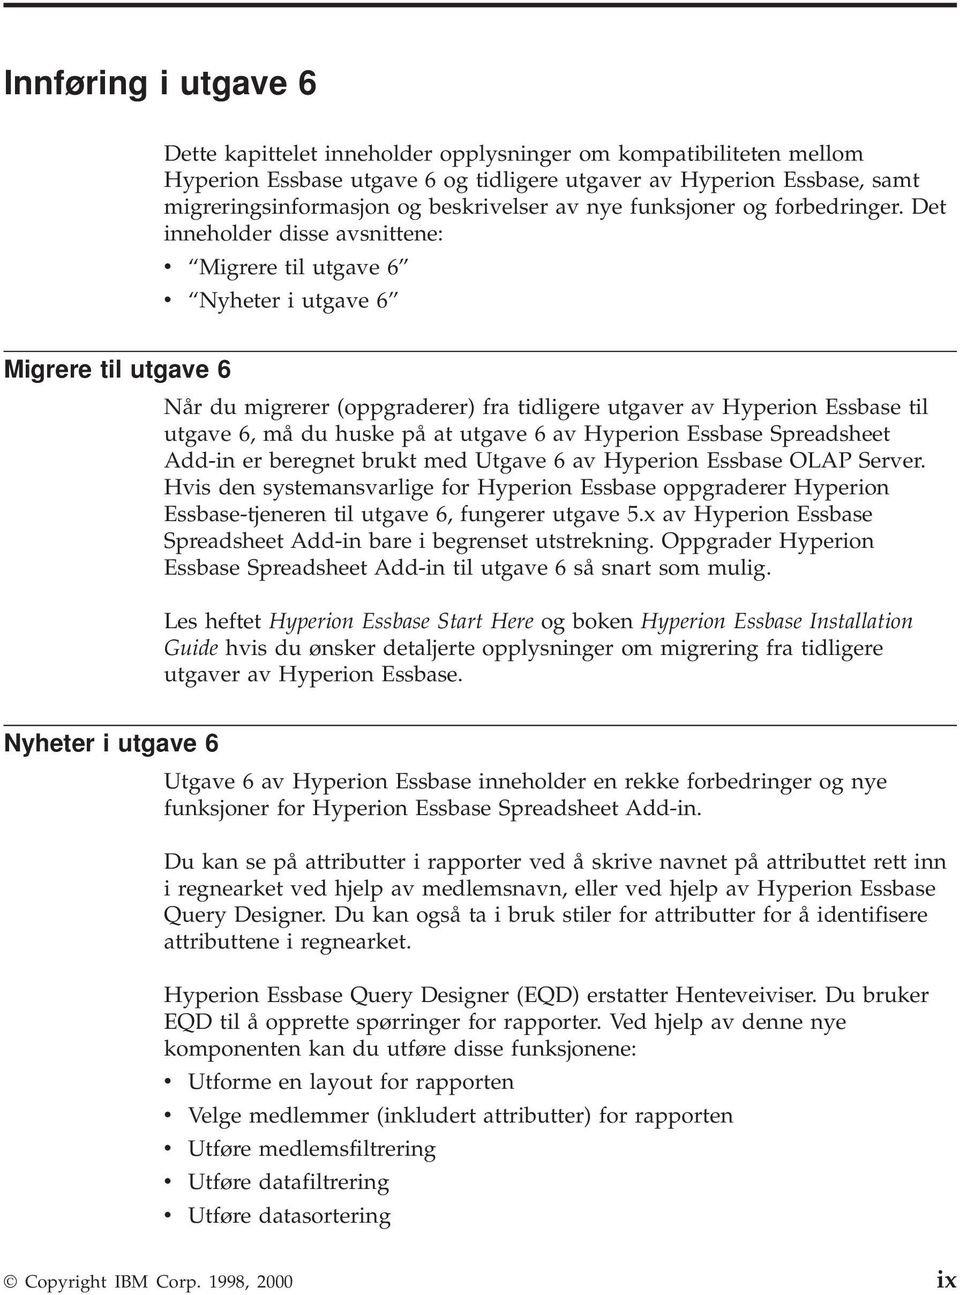 Det inneholder disse avsnittene: v Migrere til utgave 6 v Nyheter i utgave 6 Migrere til utgave 6 Når du migrerer (oppgraderer) fra tidligere utgaver av Hyperion Essbase til utgave 6, må du huske på